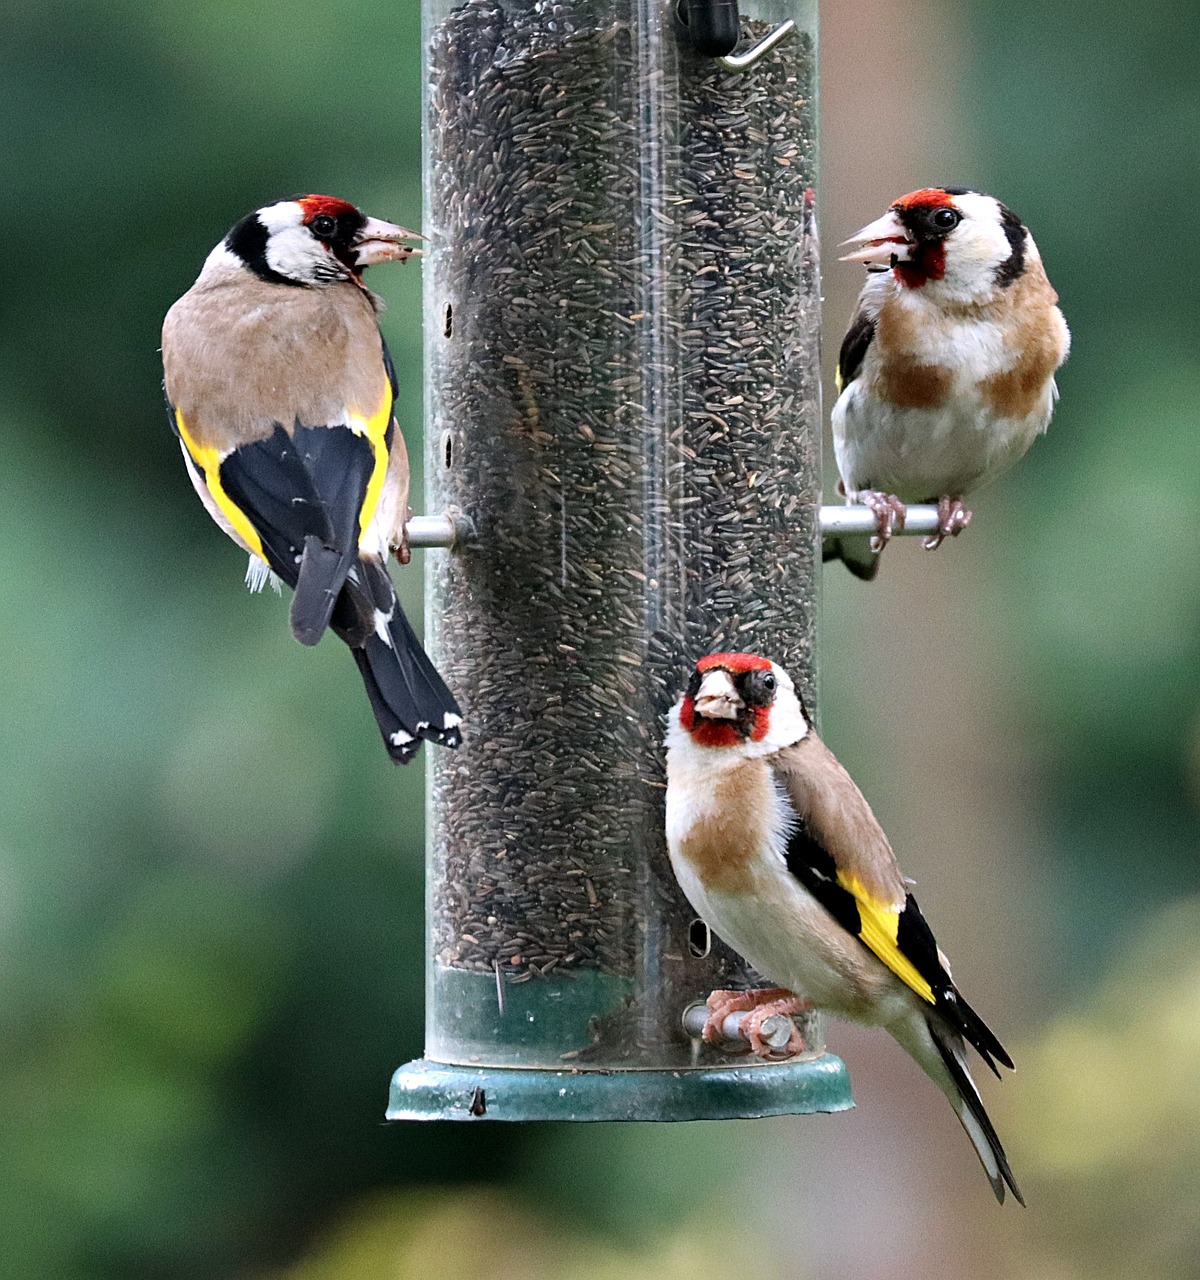 Quand nourrir les oiseaux ? - LPO (Ligue pour la Protection des Oiseaux) -  Agir pour la biodiversité